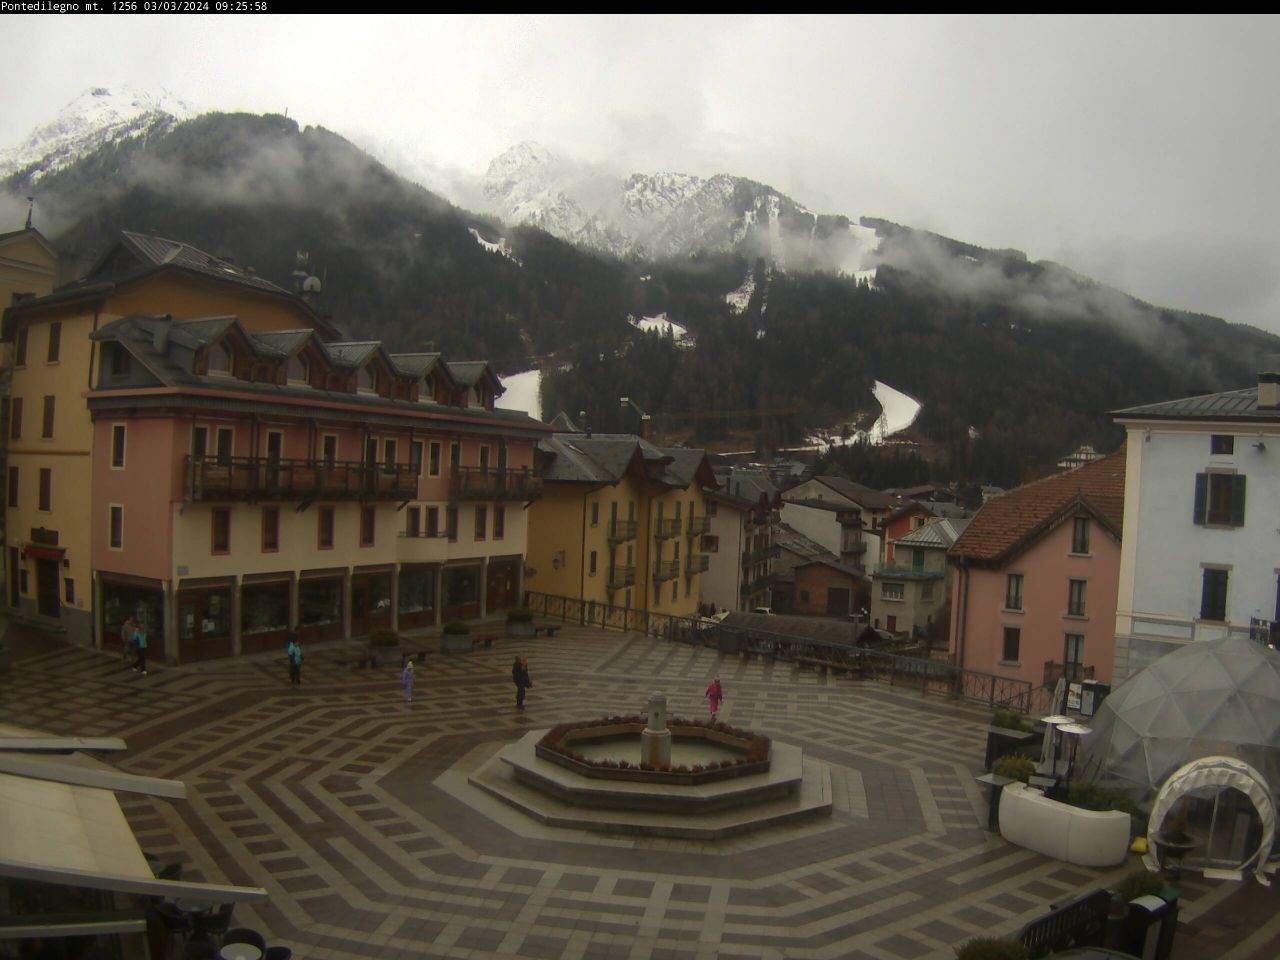 webcam Brunico, webcam Bruneck, webcam provincia di Bolzano, 
                                             webcam Trentino-Alto Adige, webcam alpi